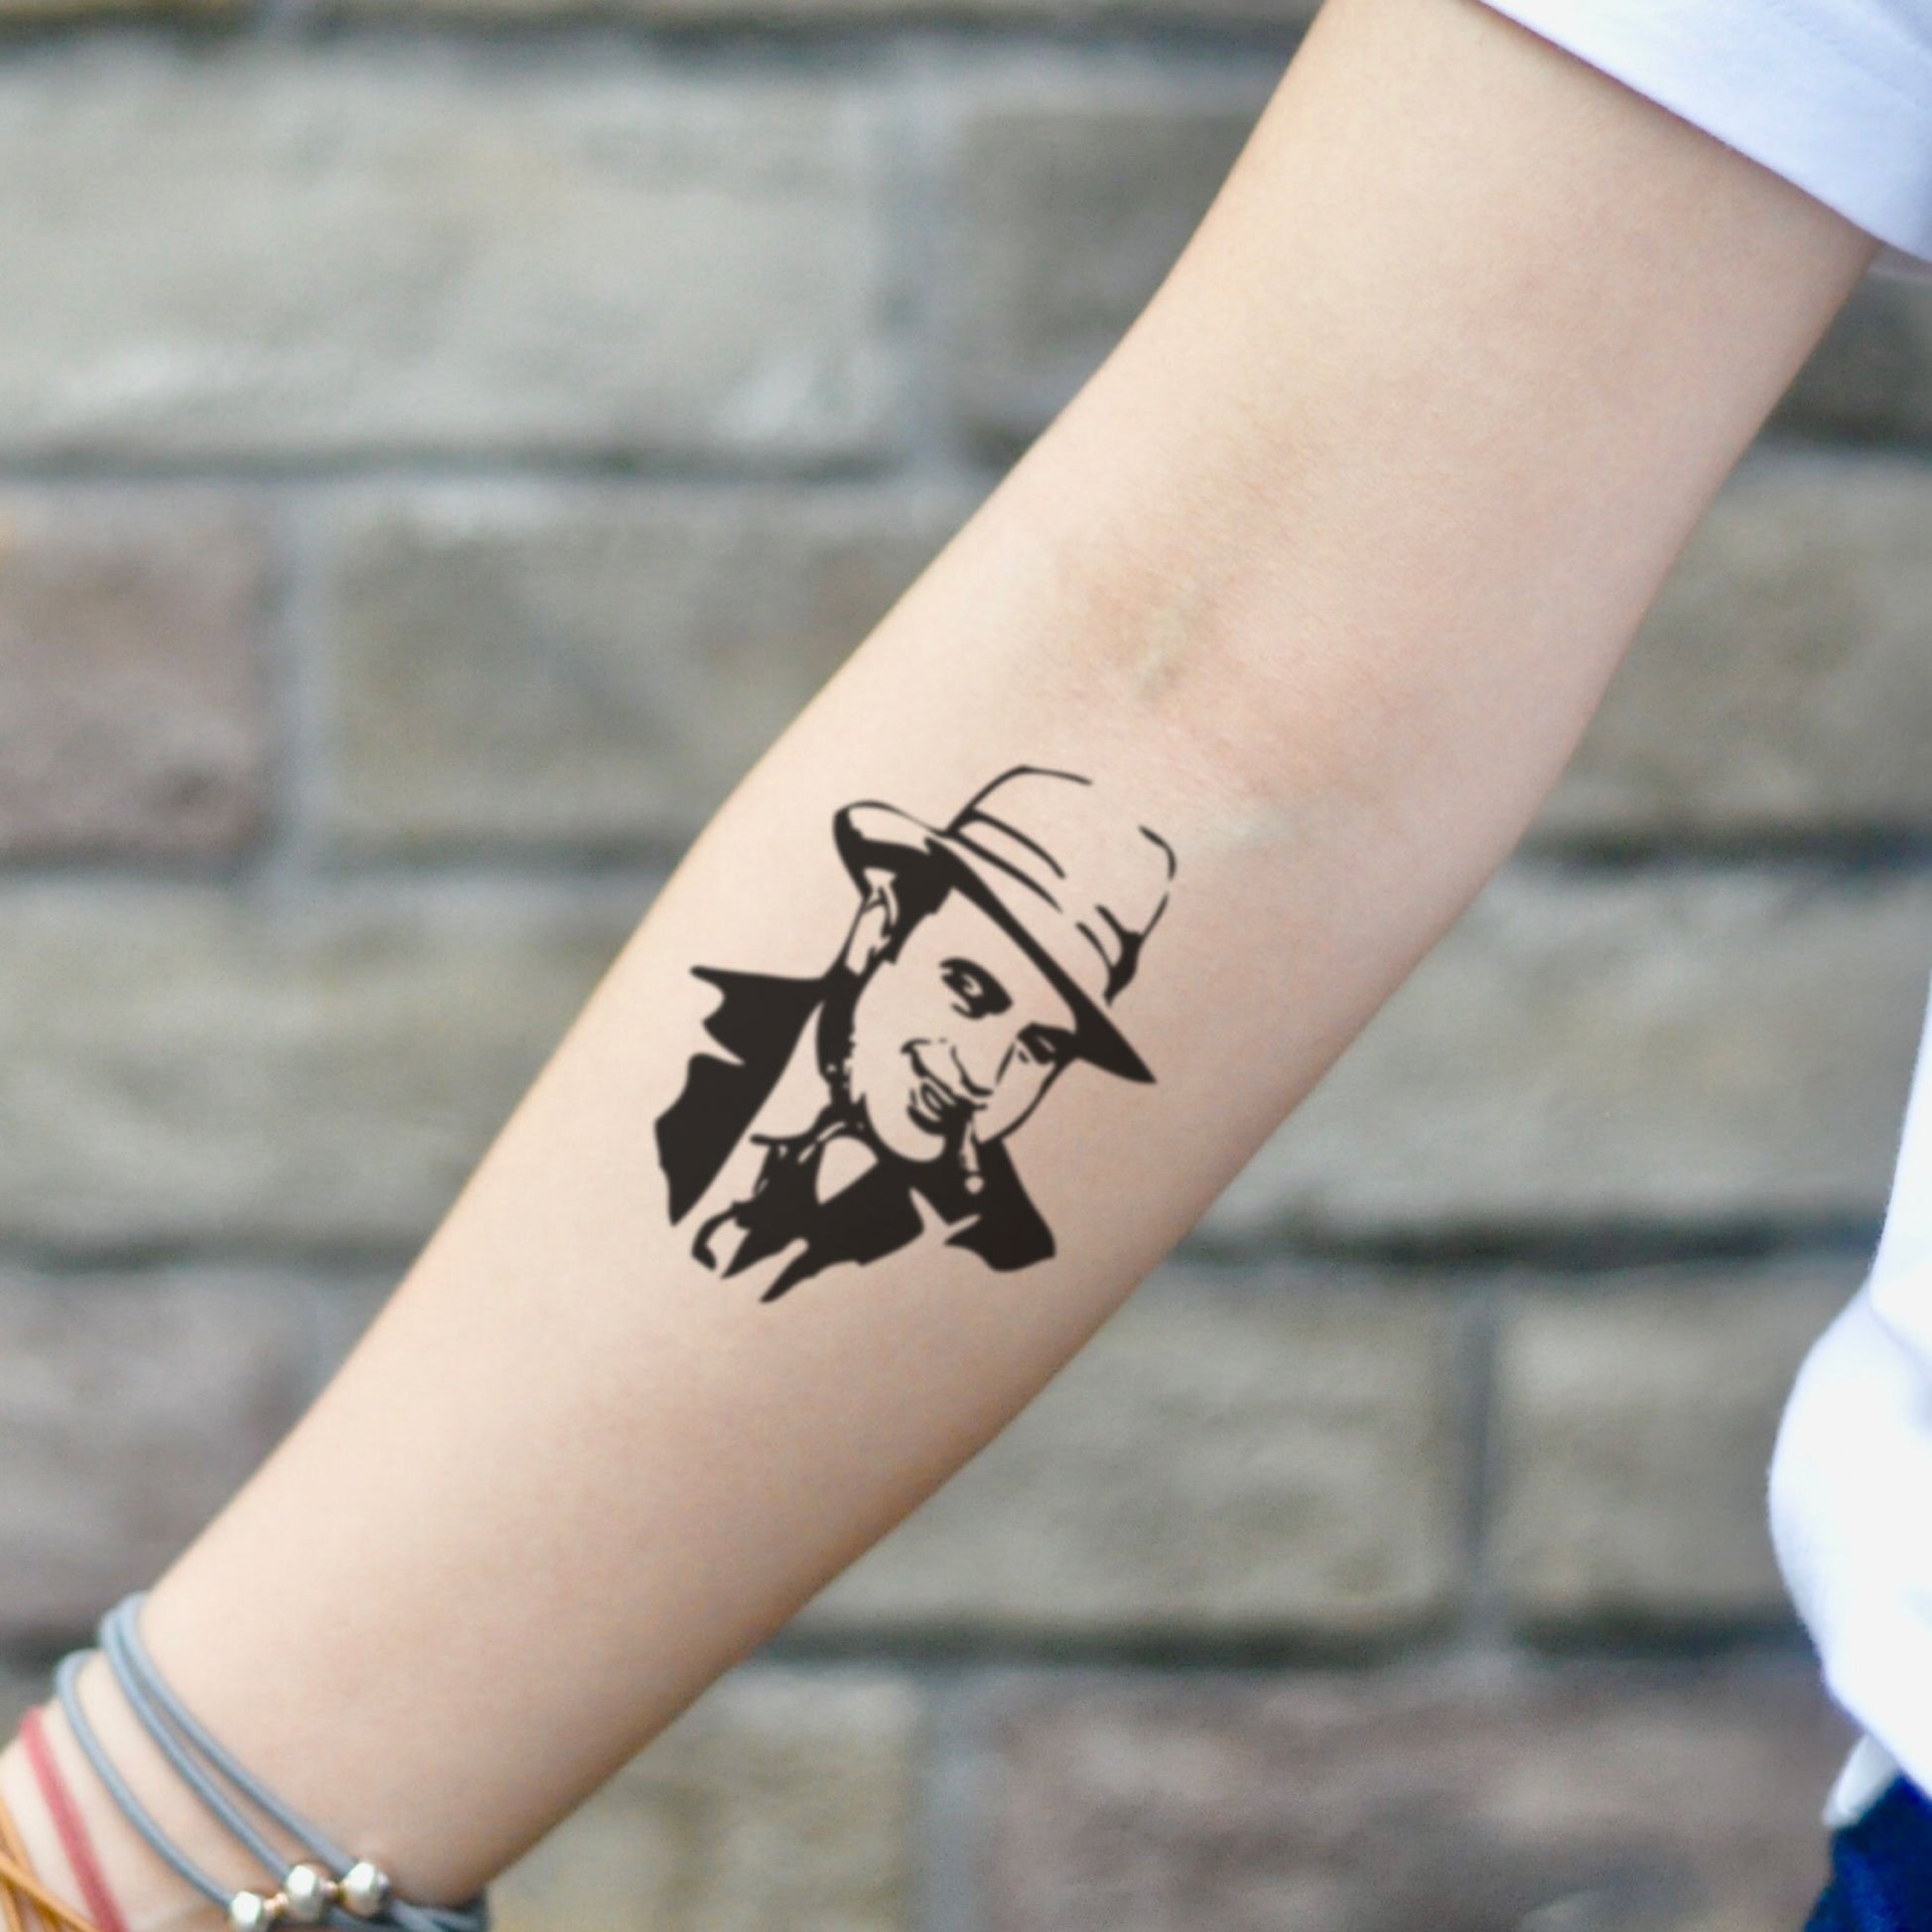 fake small al capone portrait temporary tattoo sticker design idea on inner arm